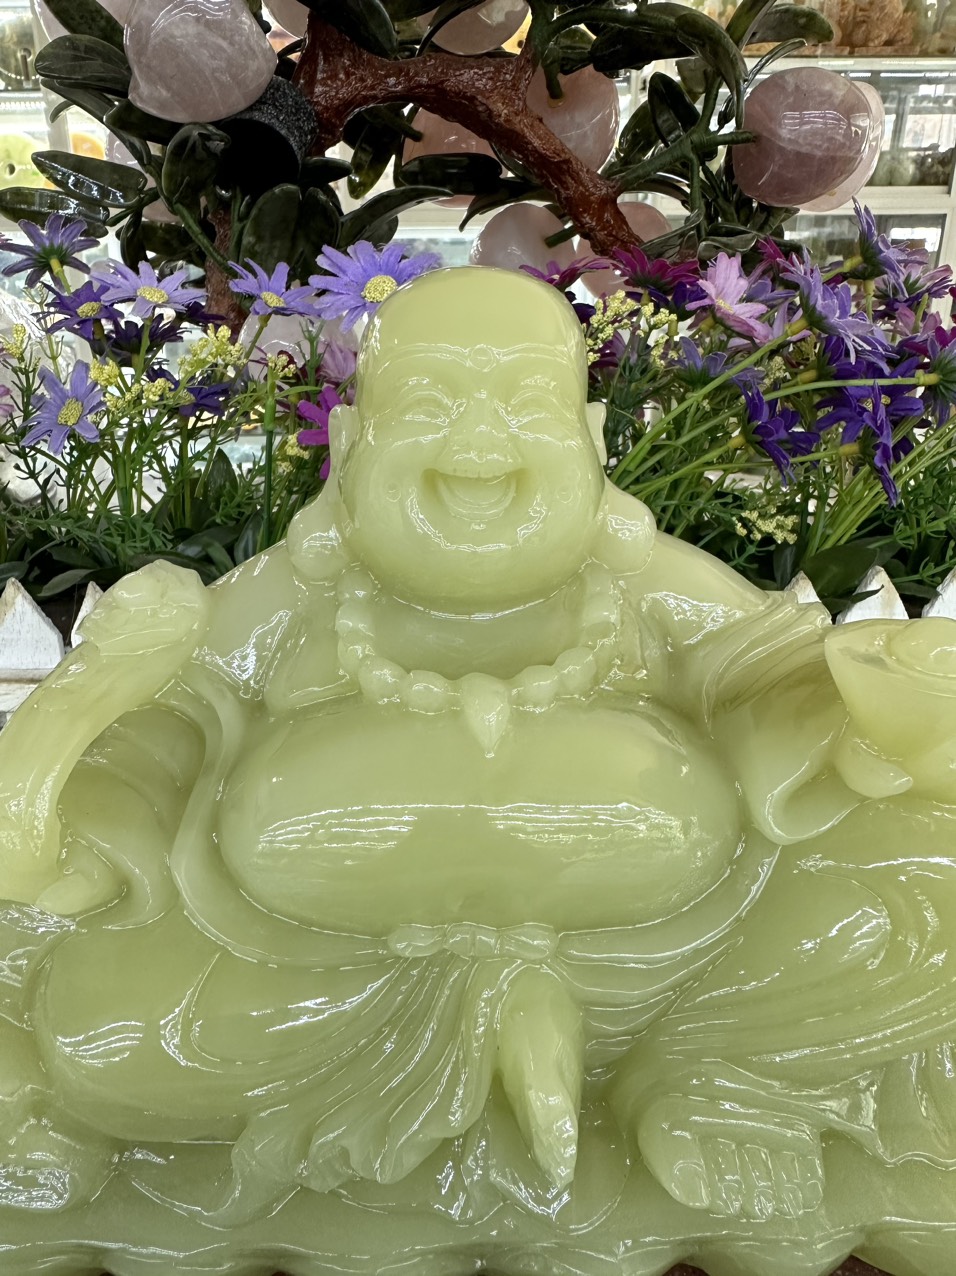 Tượng Phật Di Lặc ngồi tựa bao tiền cầm thỏi vàng phong thủy đá ngọc onyx - Dài 30 cm